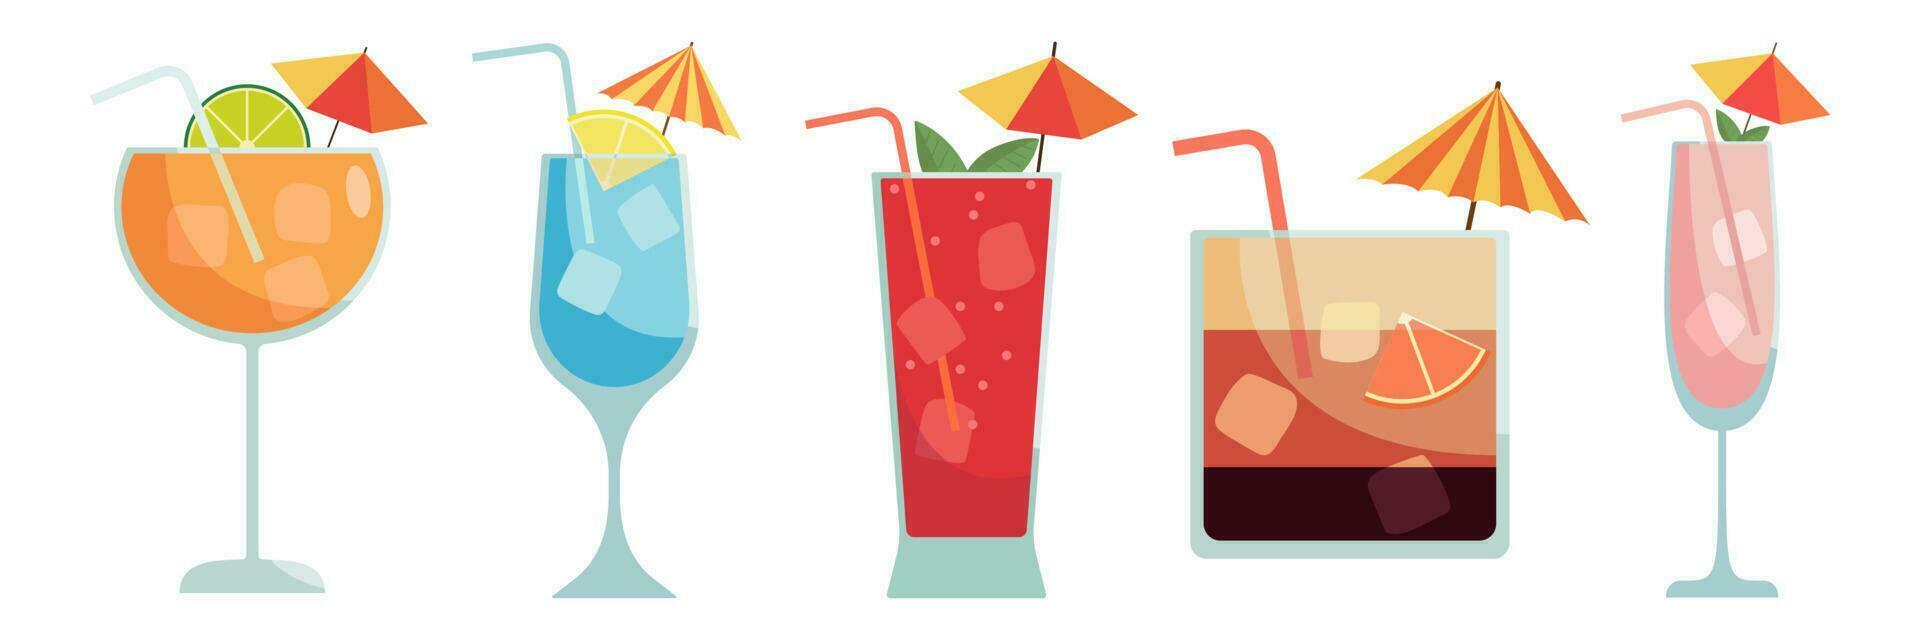 reeks van cocktails. zomer illustratie van klassiek drankjes in verschillend types van bril. vector illustratie van zomer cocktails. banier met zacht en alcohol drankjes.